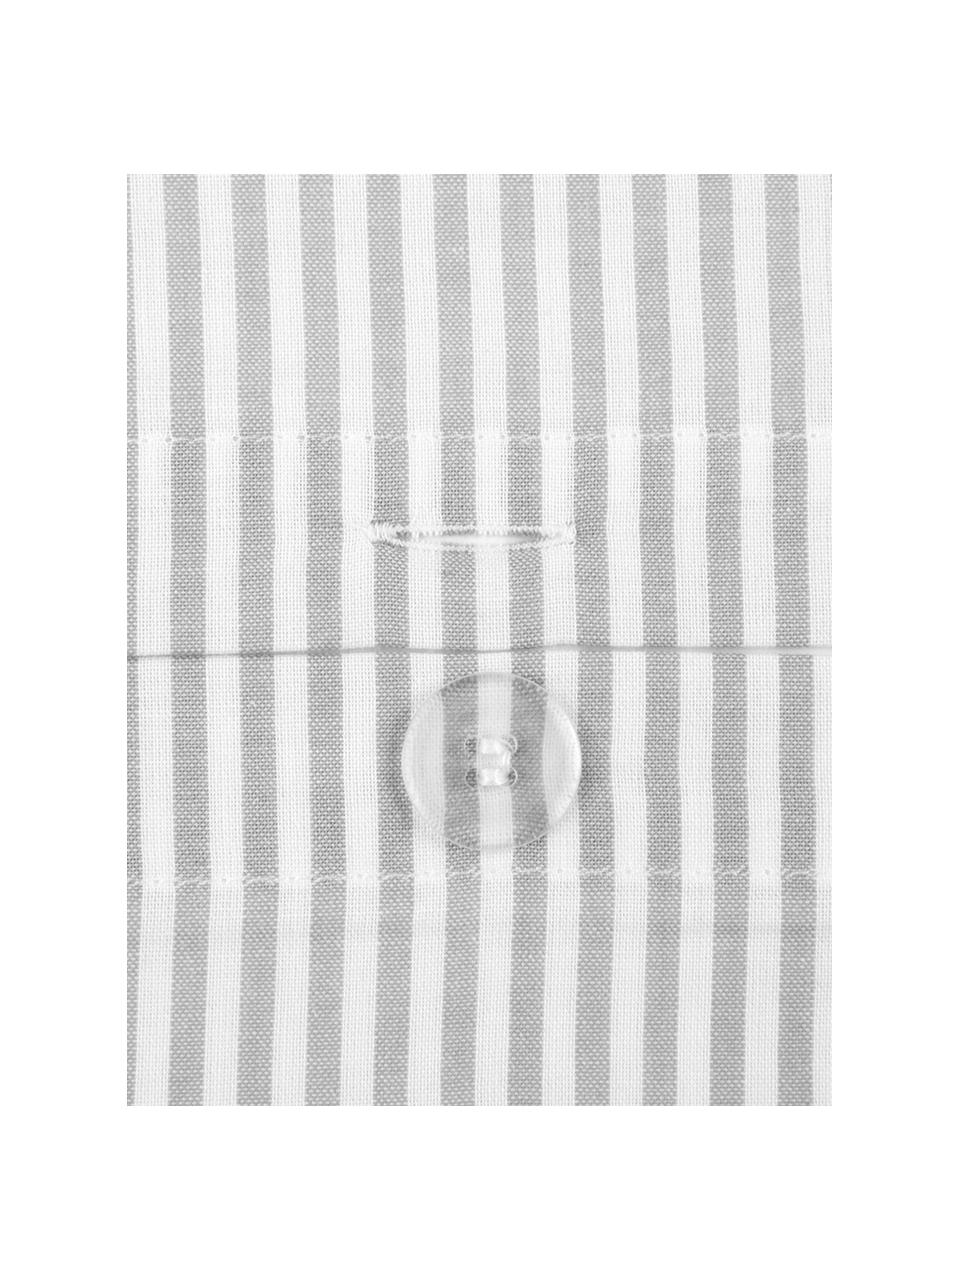 Baumwoll-Kissenbezug Ellie, fein gestreift, 65 x 65 cm, Webart: Renforcé Fadendichte 118 , Weiss, Grau, B 65 x L 65 cm